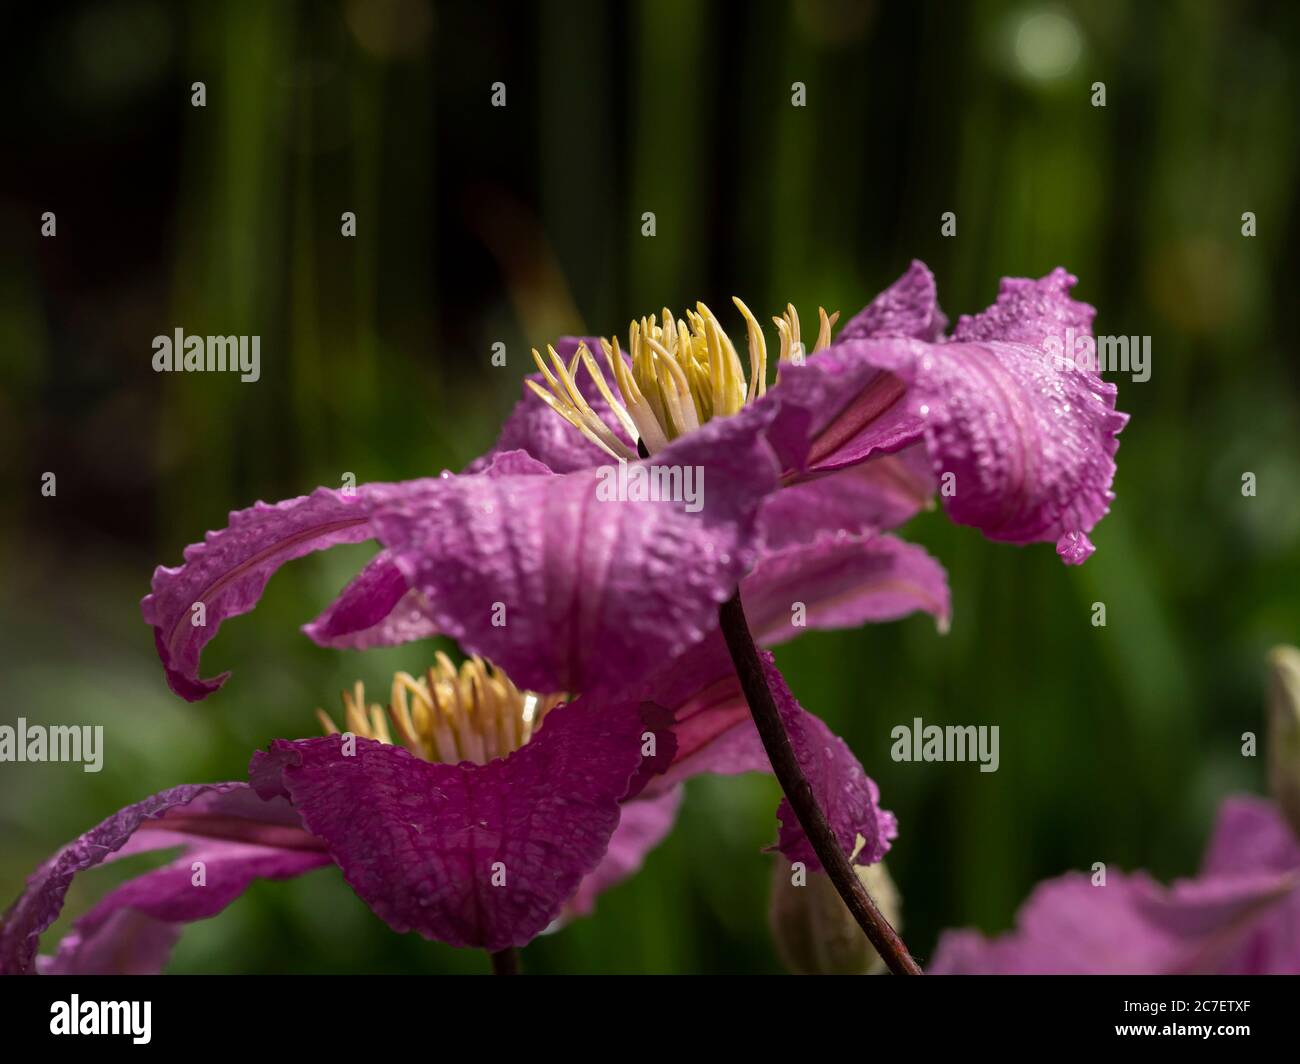 Nahaufnahme der rosa Blütenblätter und gelben Staubgefäße von schönen Clematis Blumen in einem Garten Stockfoto